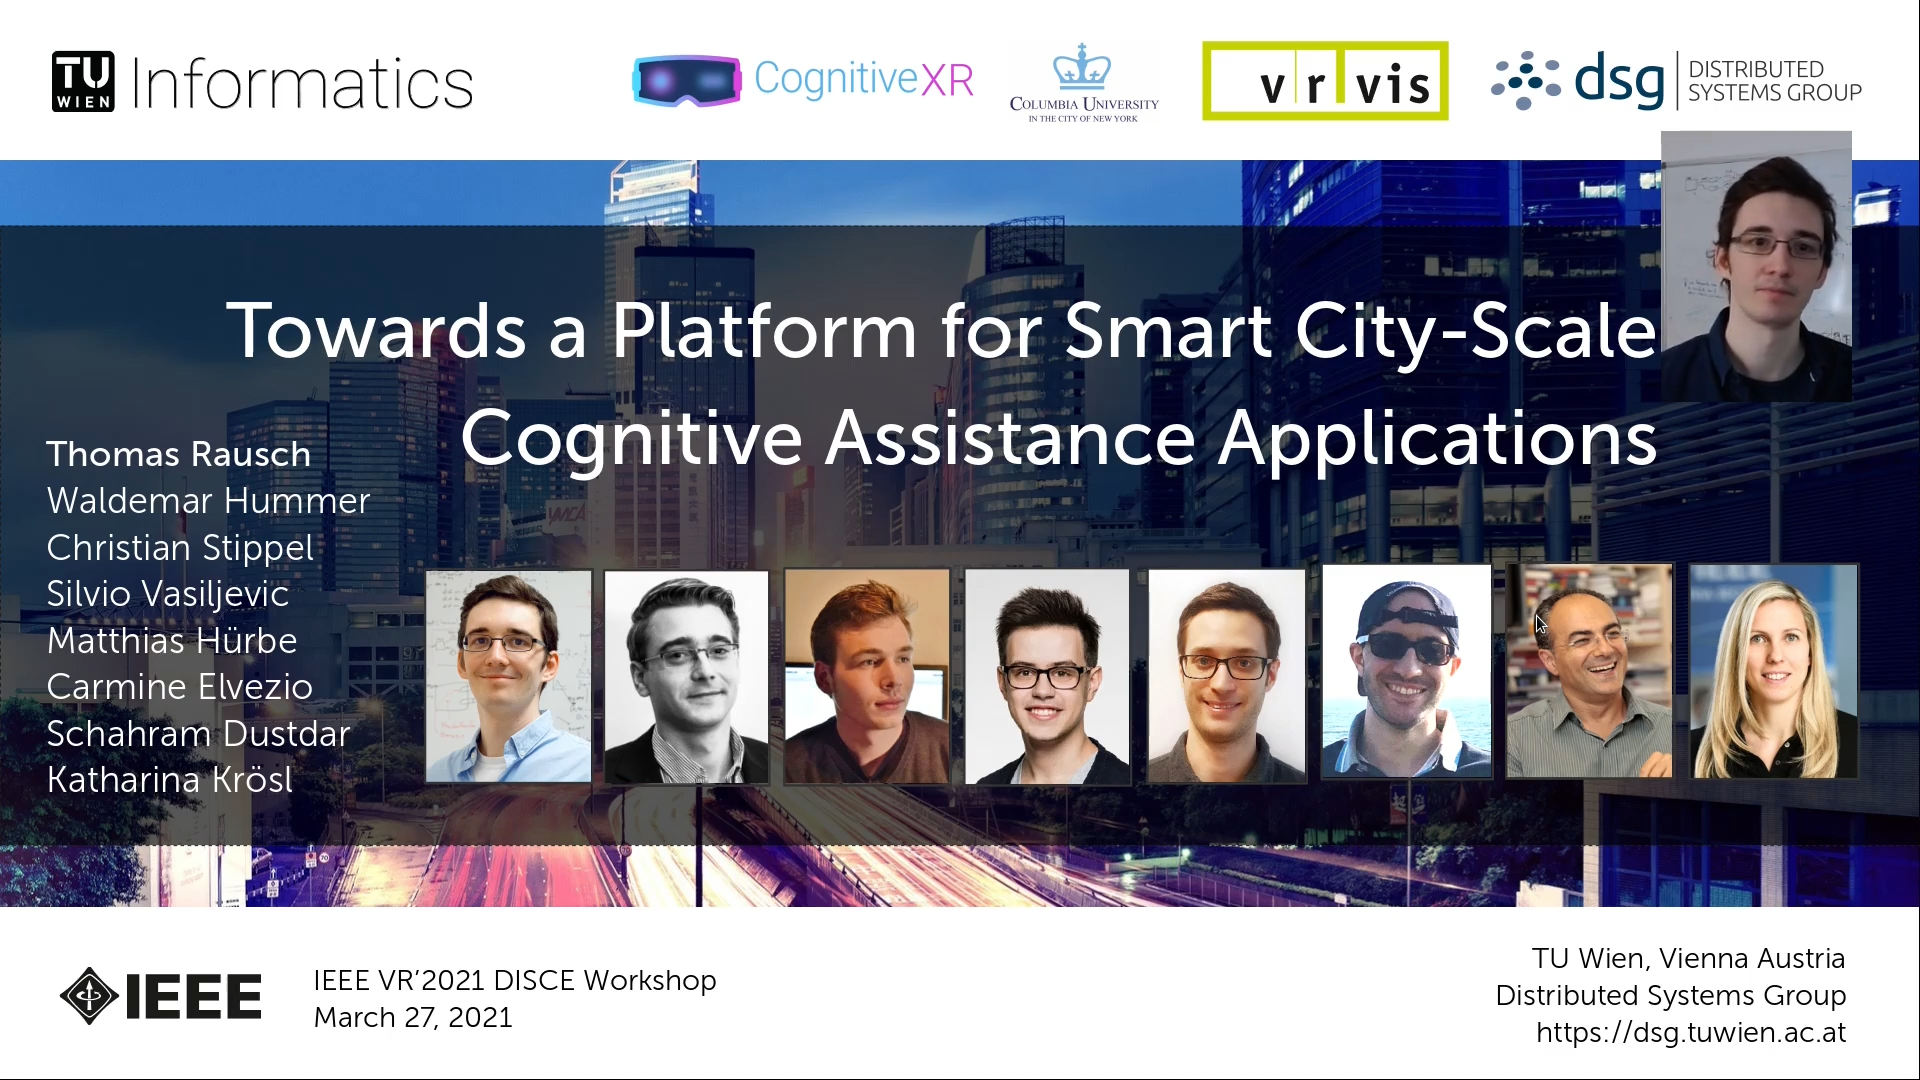 Begrüßungs-Slide des IEEE VR 2021-Vortrags "Towards a Platform for Smart City-Scale Cognitive Assistance Applications"